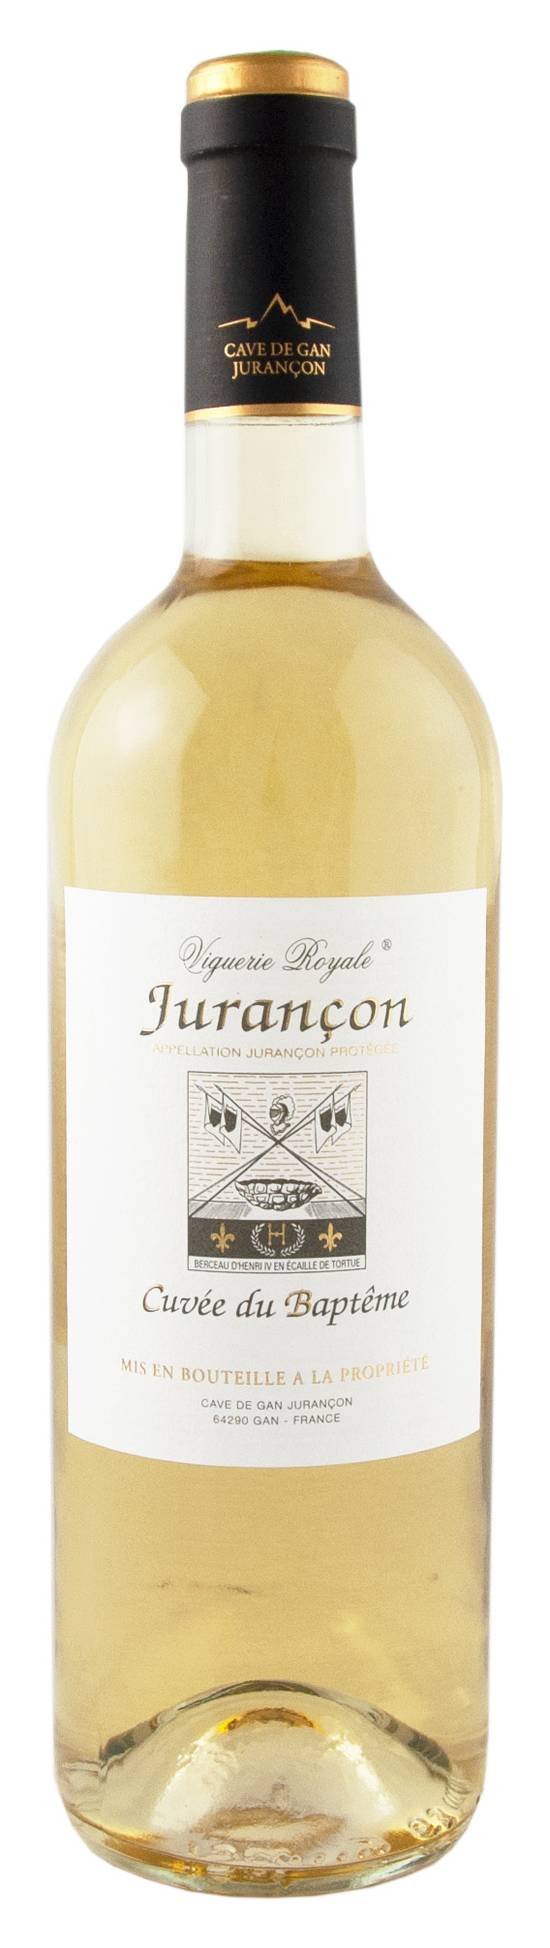 Viguerie Royale - Jurancon vin blanc moelleux cuvée du baptême (750 ml)